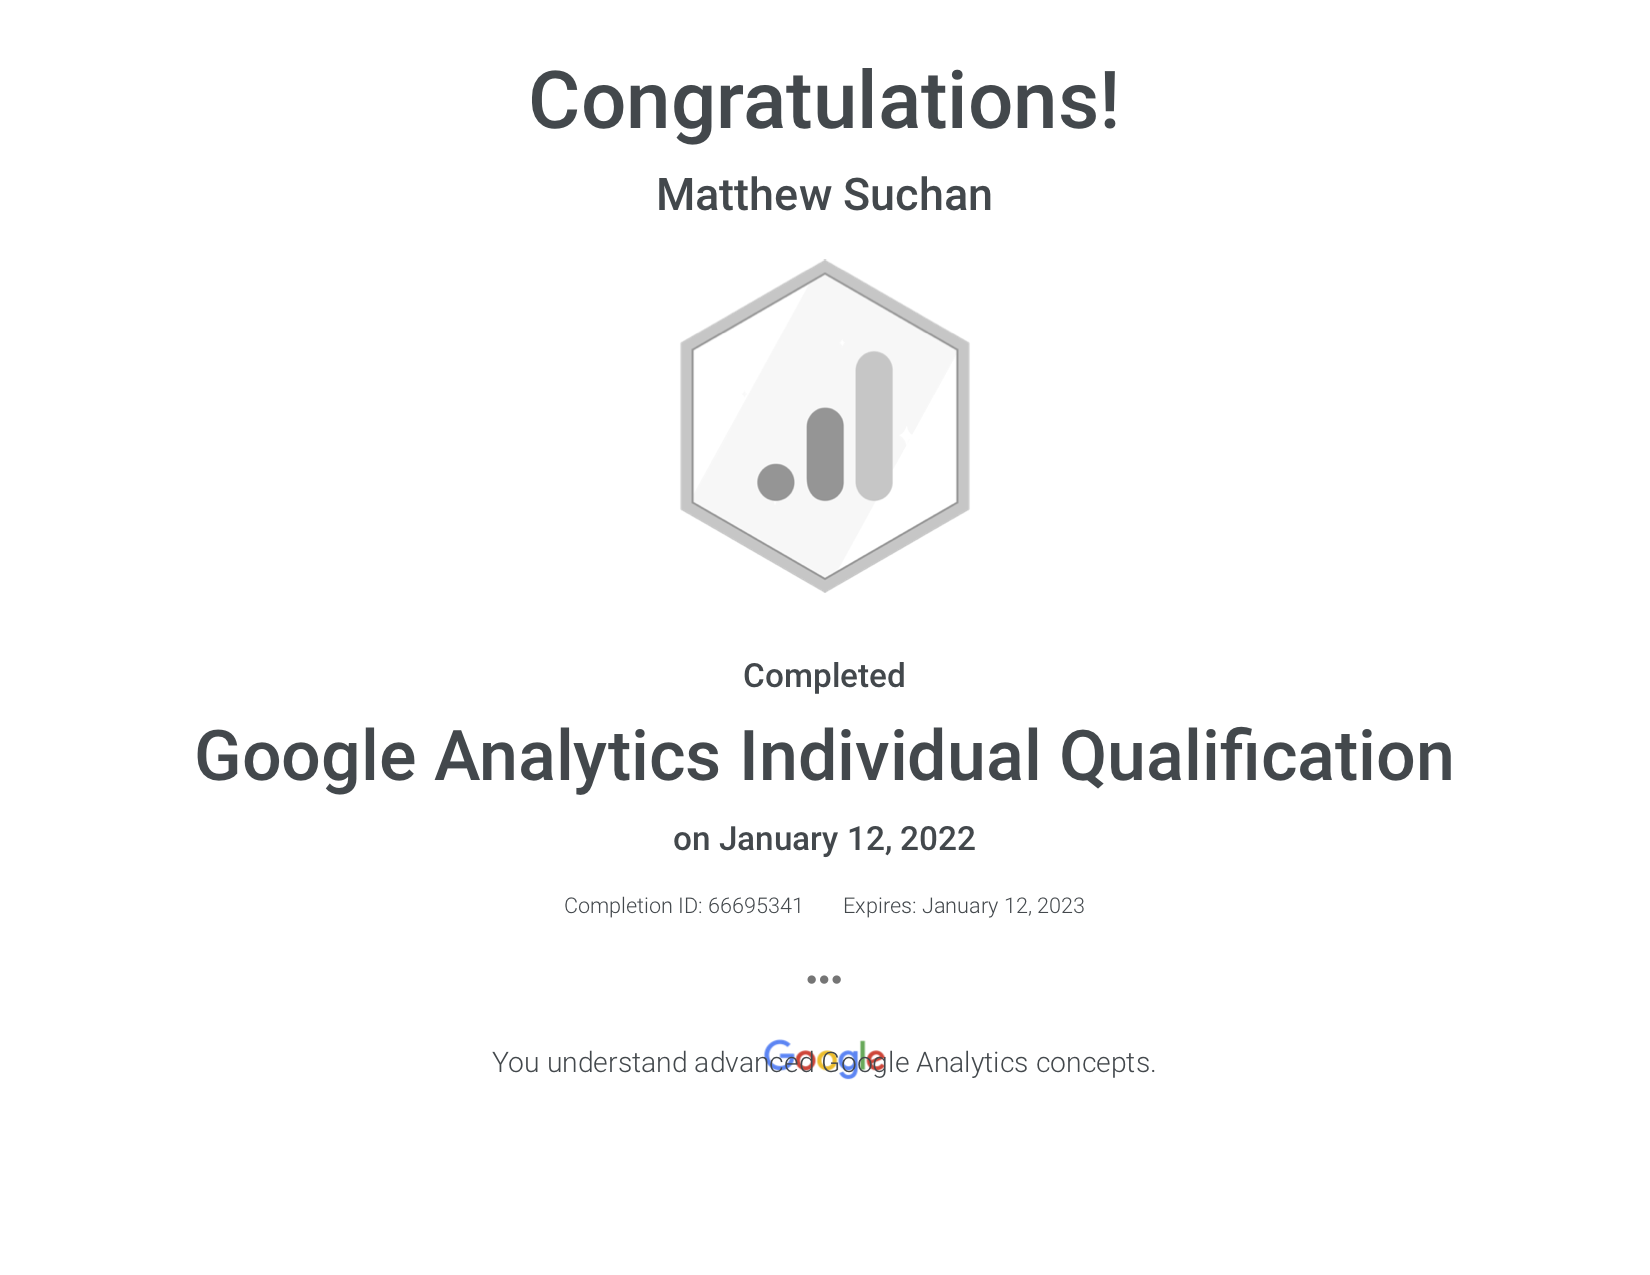 Google Analytics IQ Exam Certificate